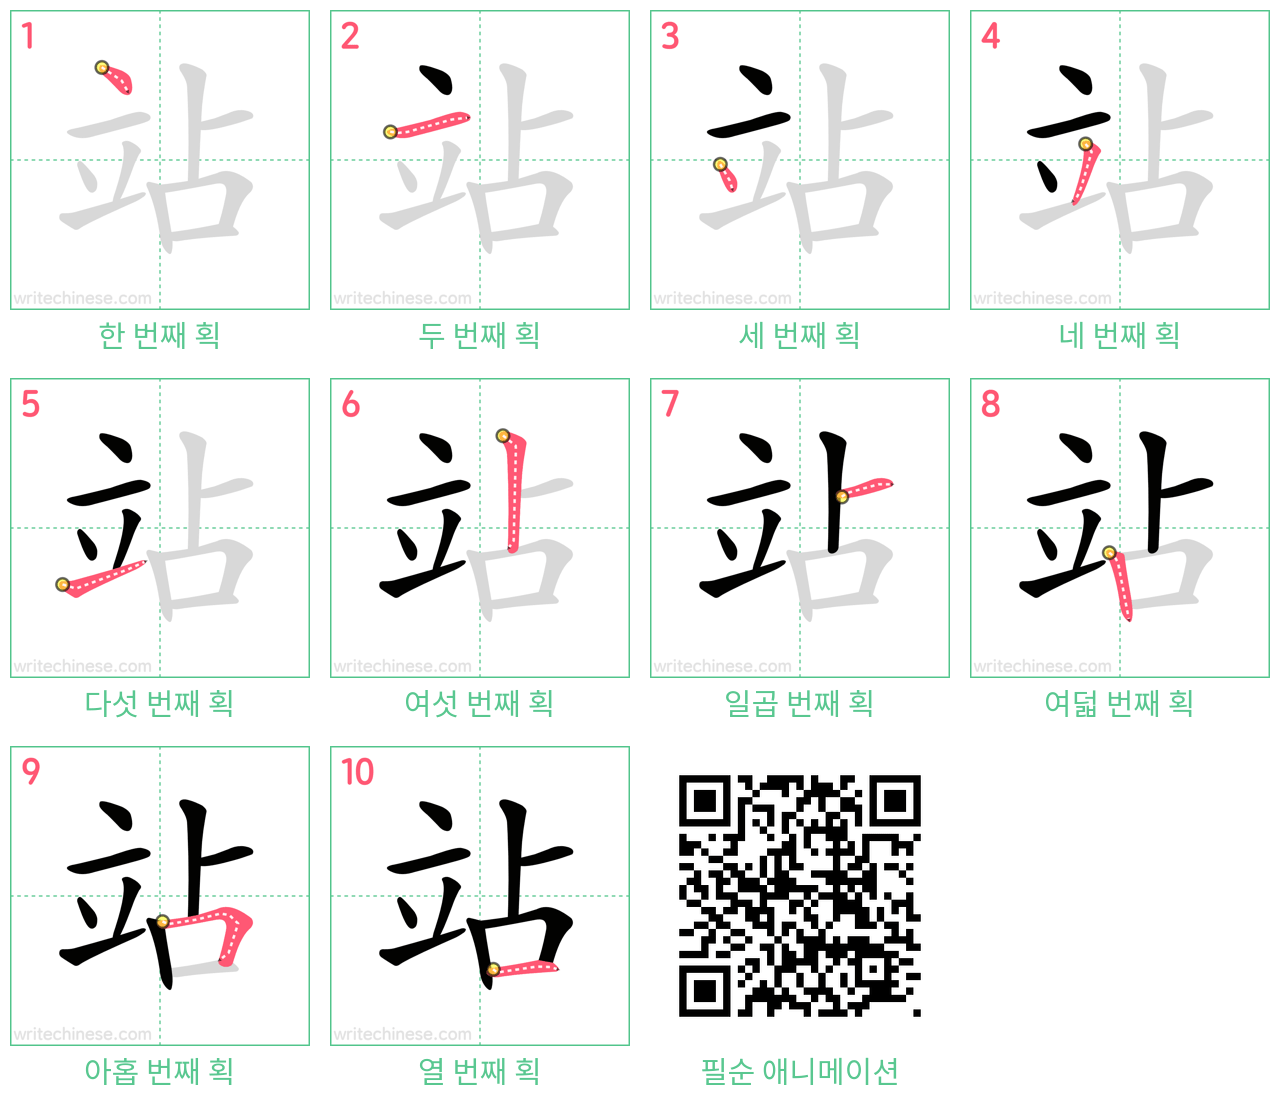 站 step-by-step stroke order diagrams